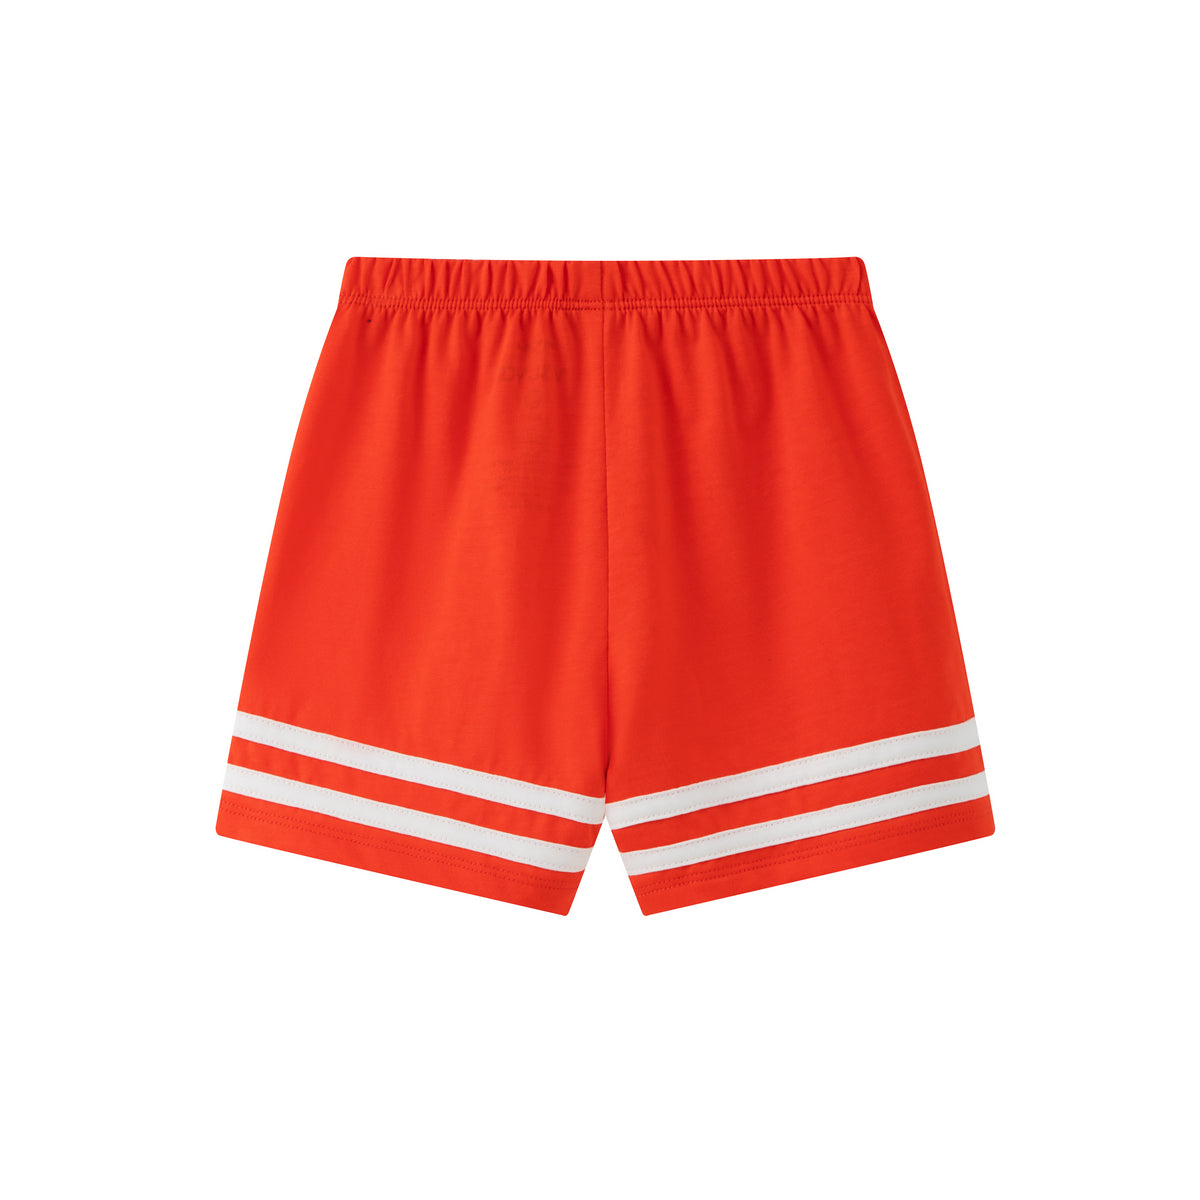 Vauva SS24 - 嬰兒螃蟹印花短袖套裝 (橙色) 